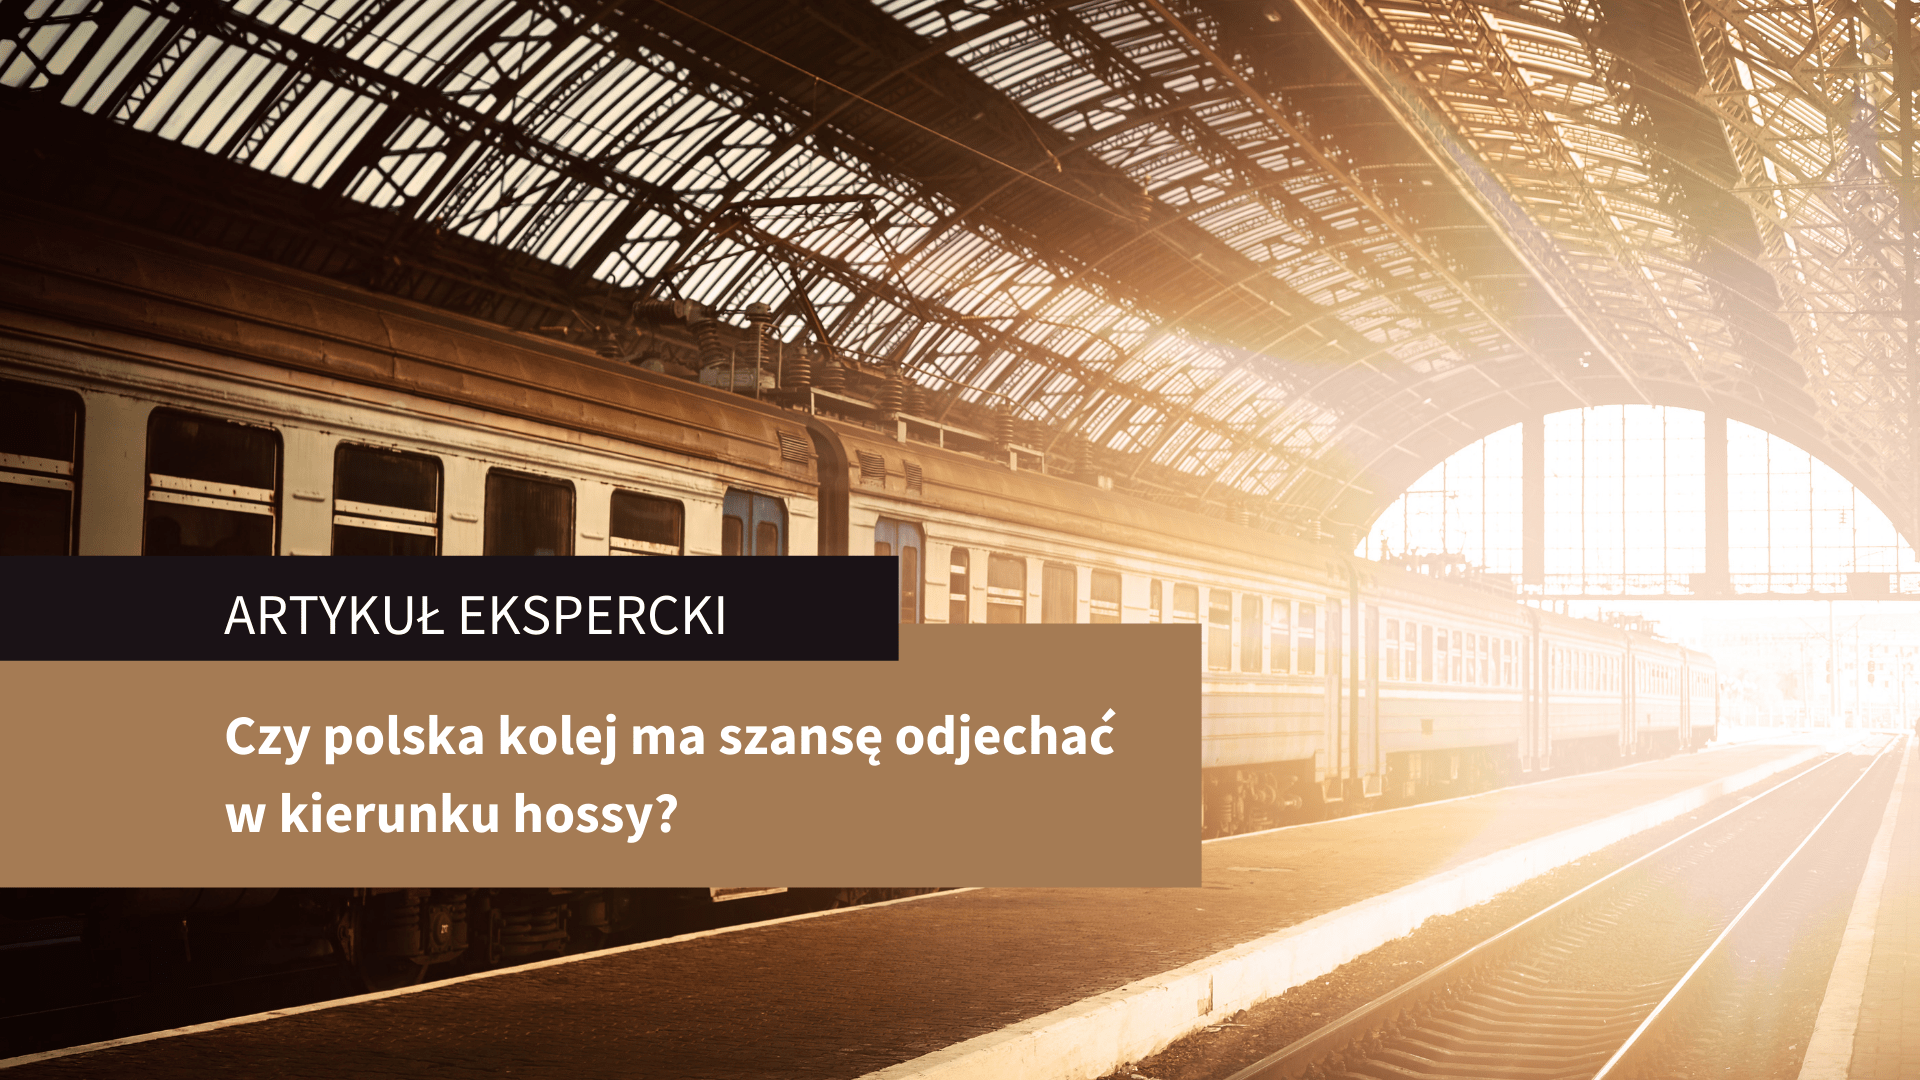 Czy polska kolej ma szansę odjechać w kierunku hossy? – artykuł ekspercki